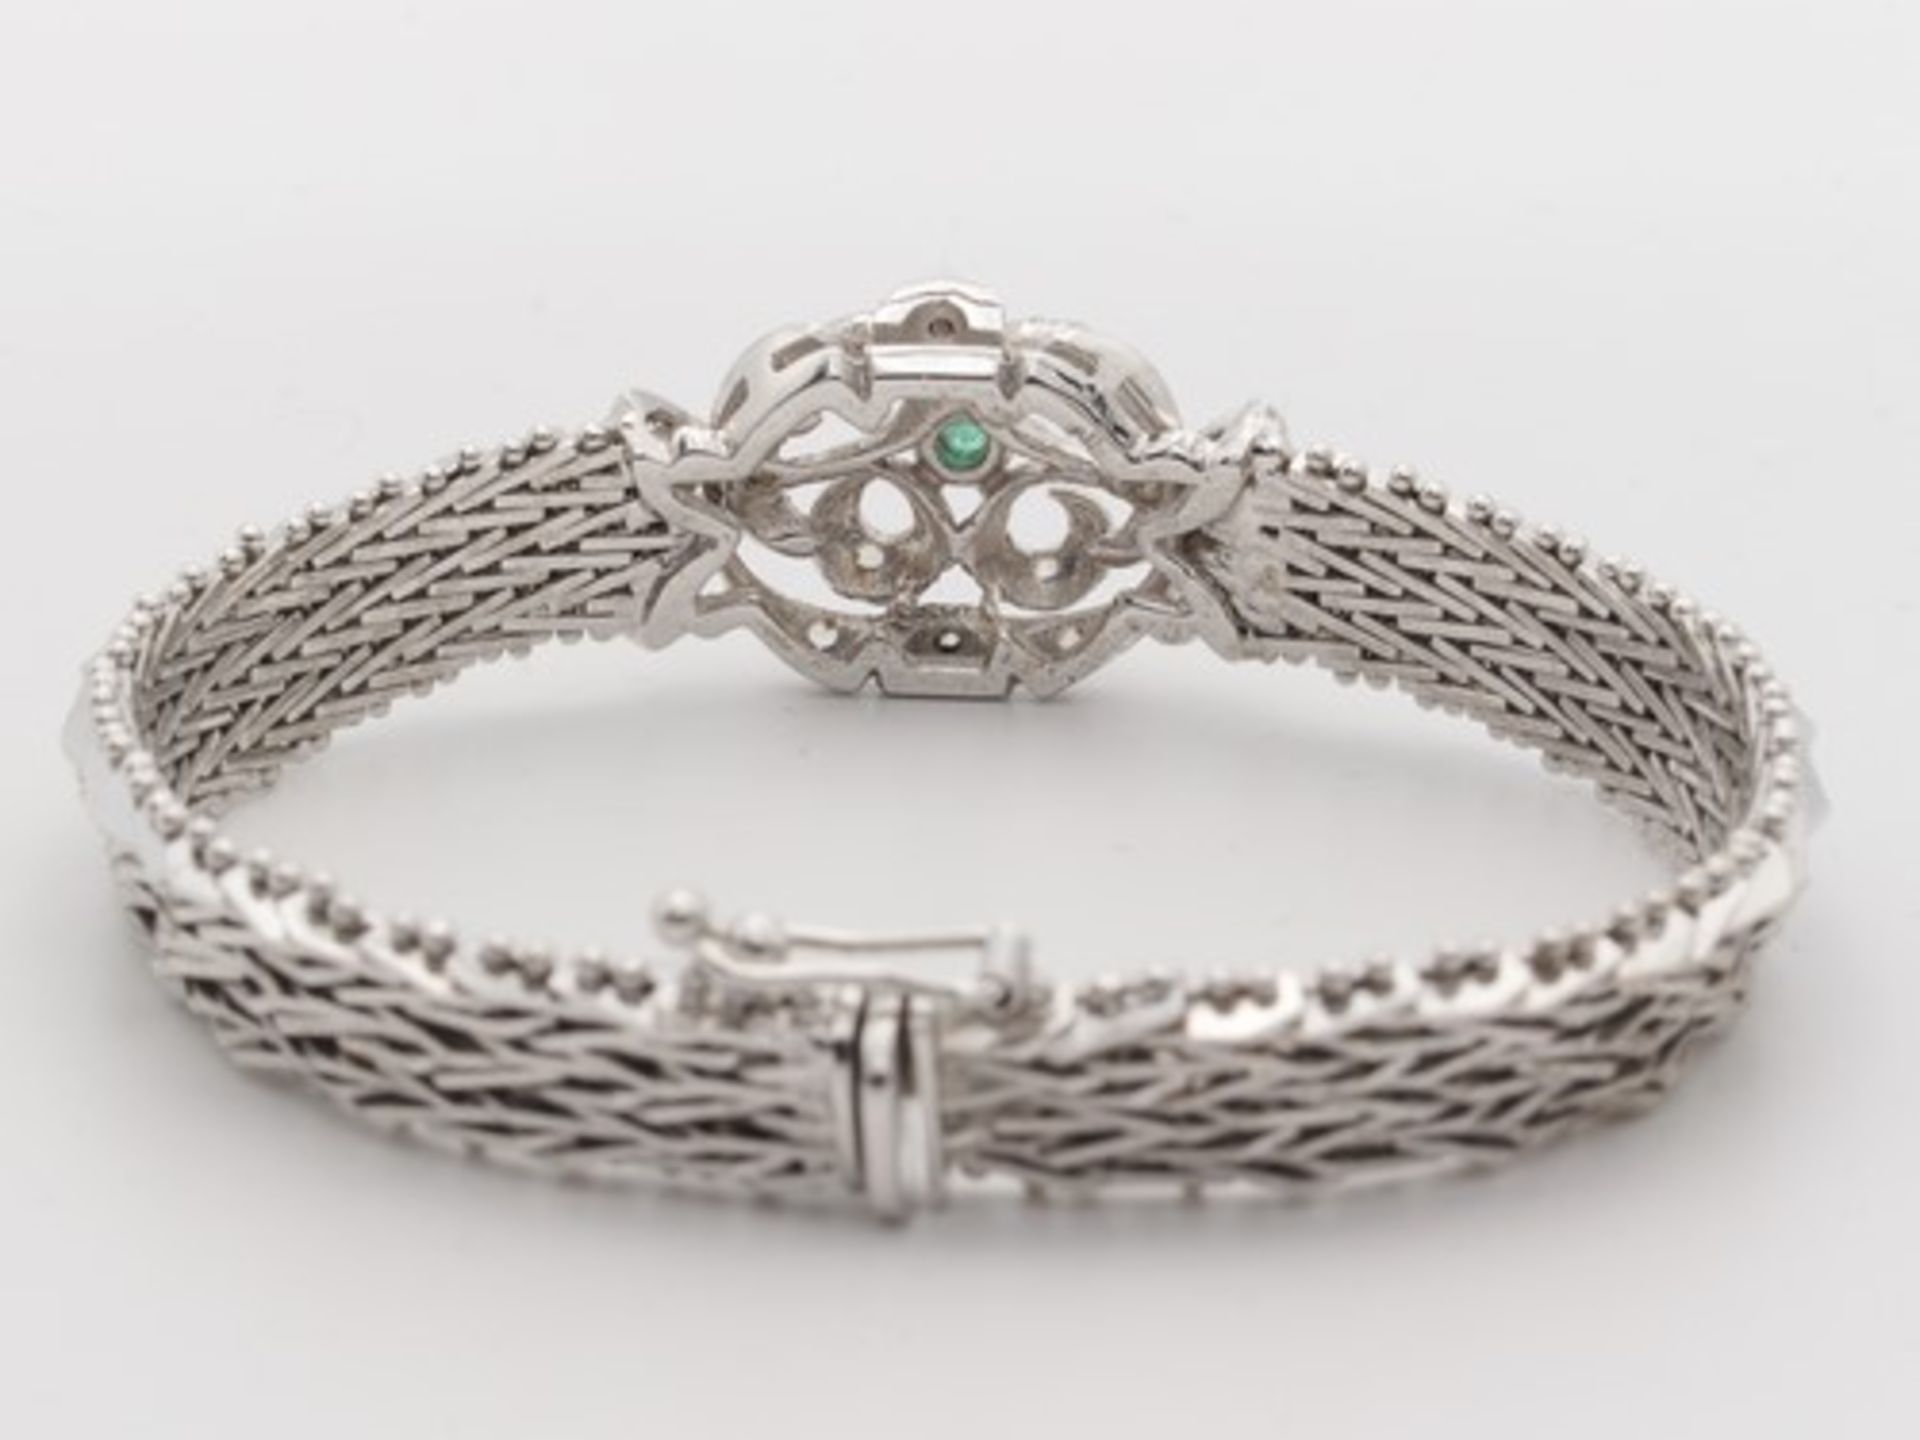 Diamant/Smaragd - ArmbandWG 750, florales, durchbrochenes Mittelteil, besetzt mit Diamantrosen u. - Bild 4 aus 6